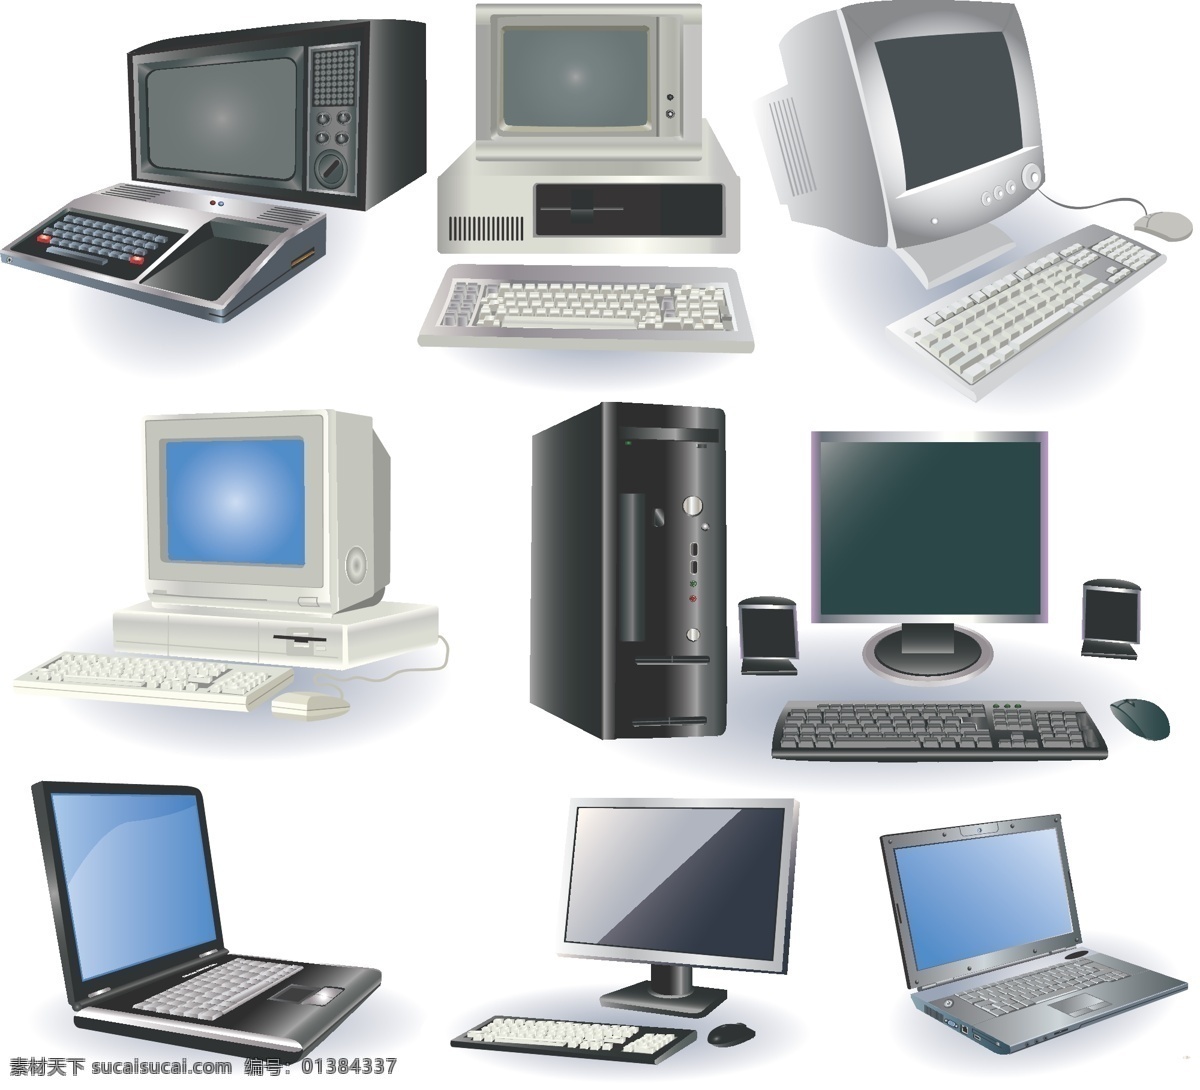 电脑相关产品 笔记本电脑 电脑设计 键盘 模板 设计稿 鼠标 素材元素 相关产品 机箱 音响 显示器 源文件 矢量图